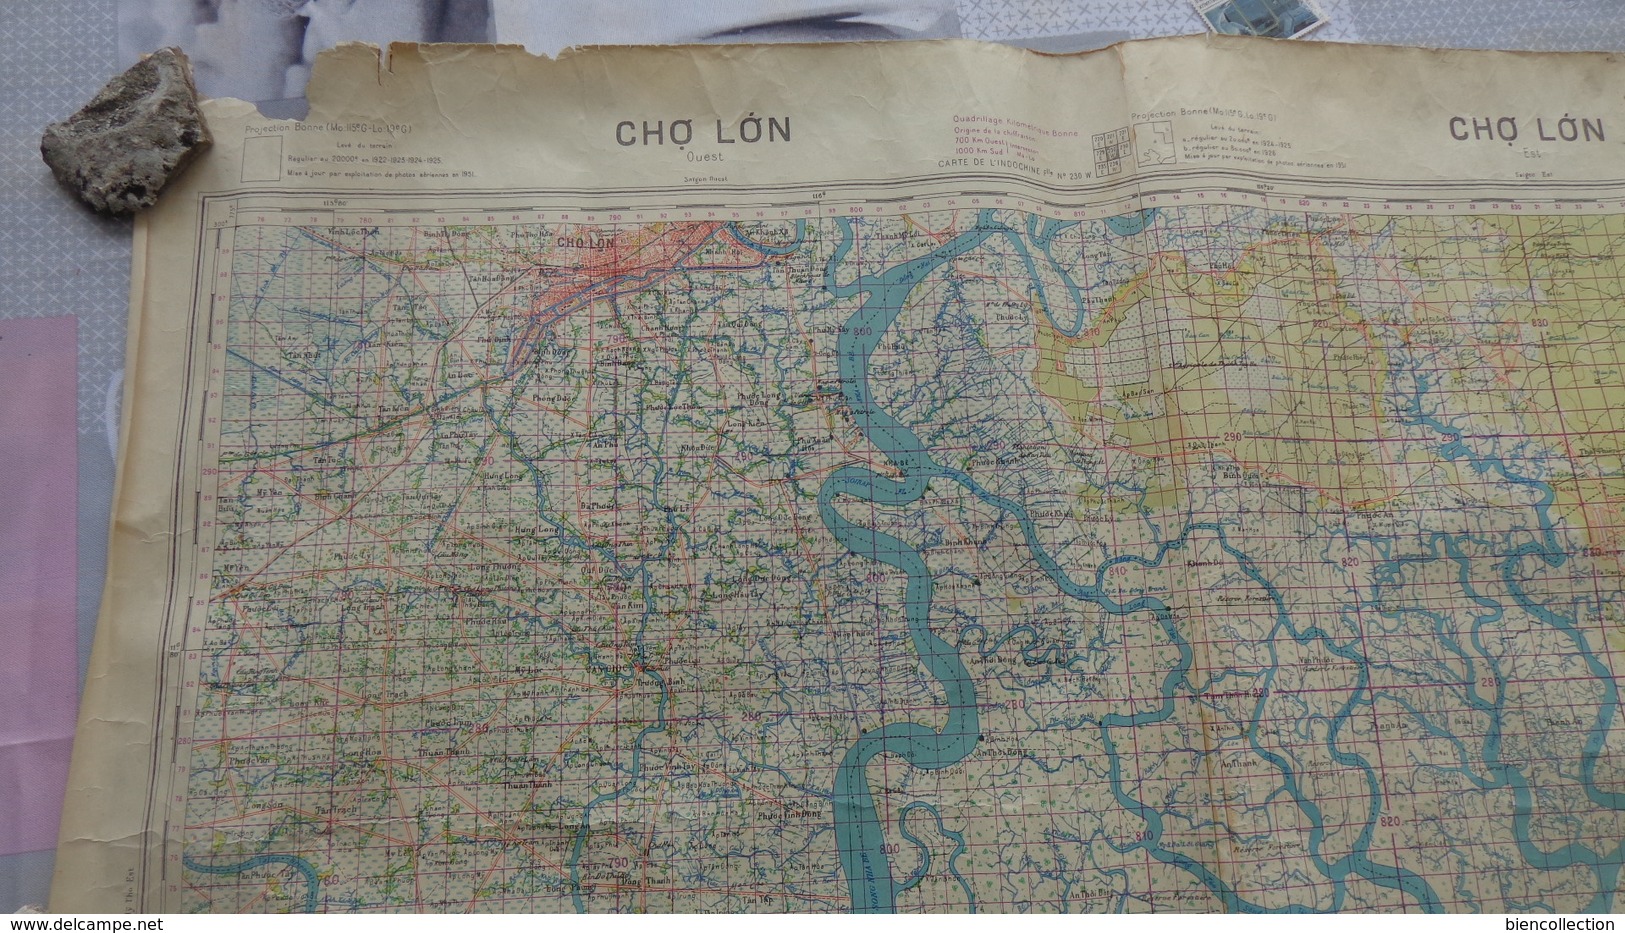 Carte topographique d'état major de l'Indochine secteur Cho Long de 1951